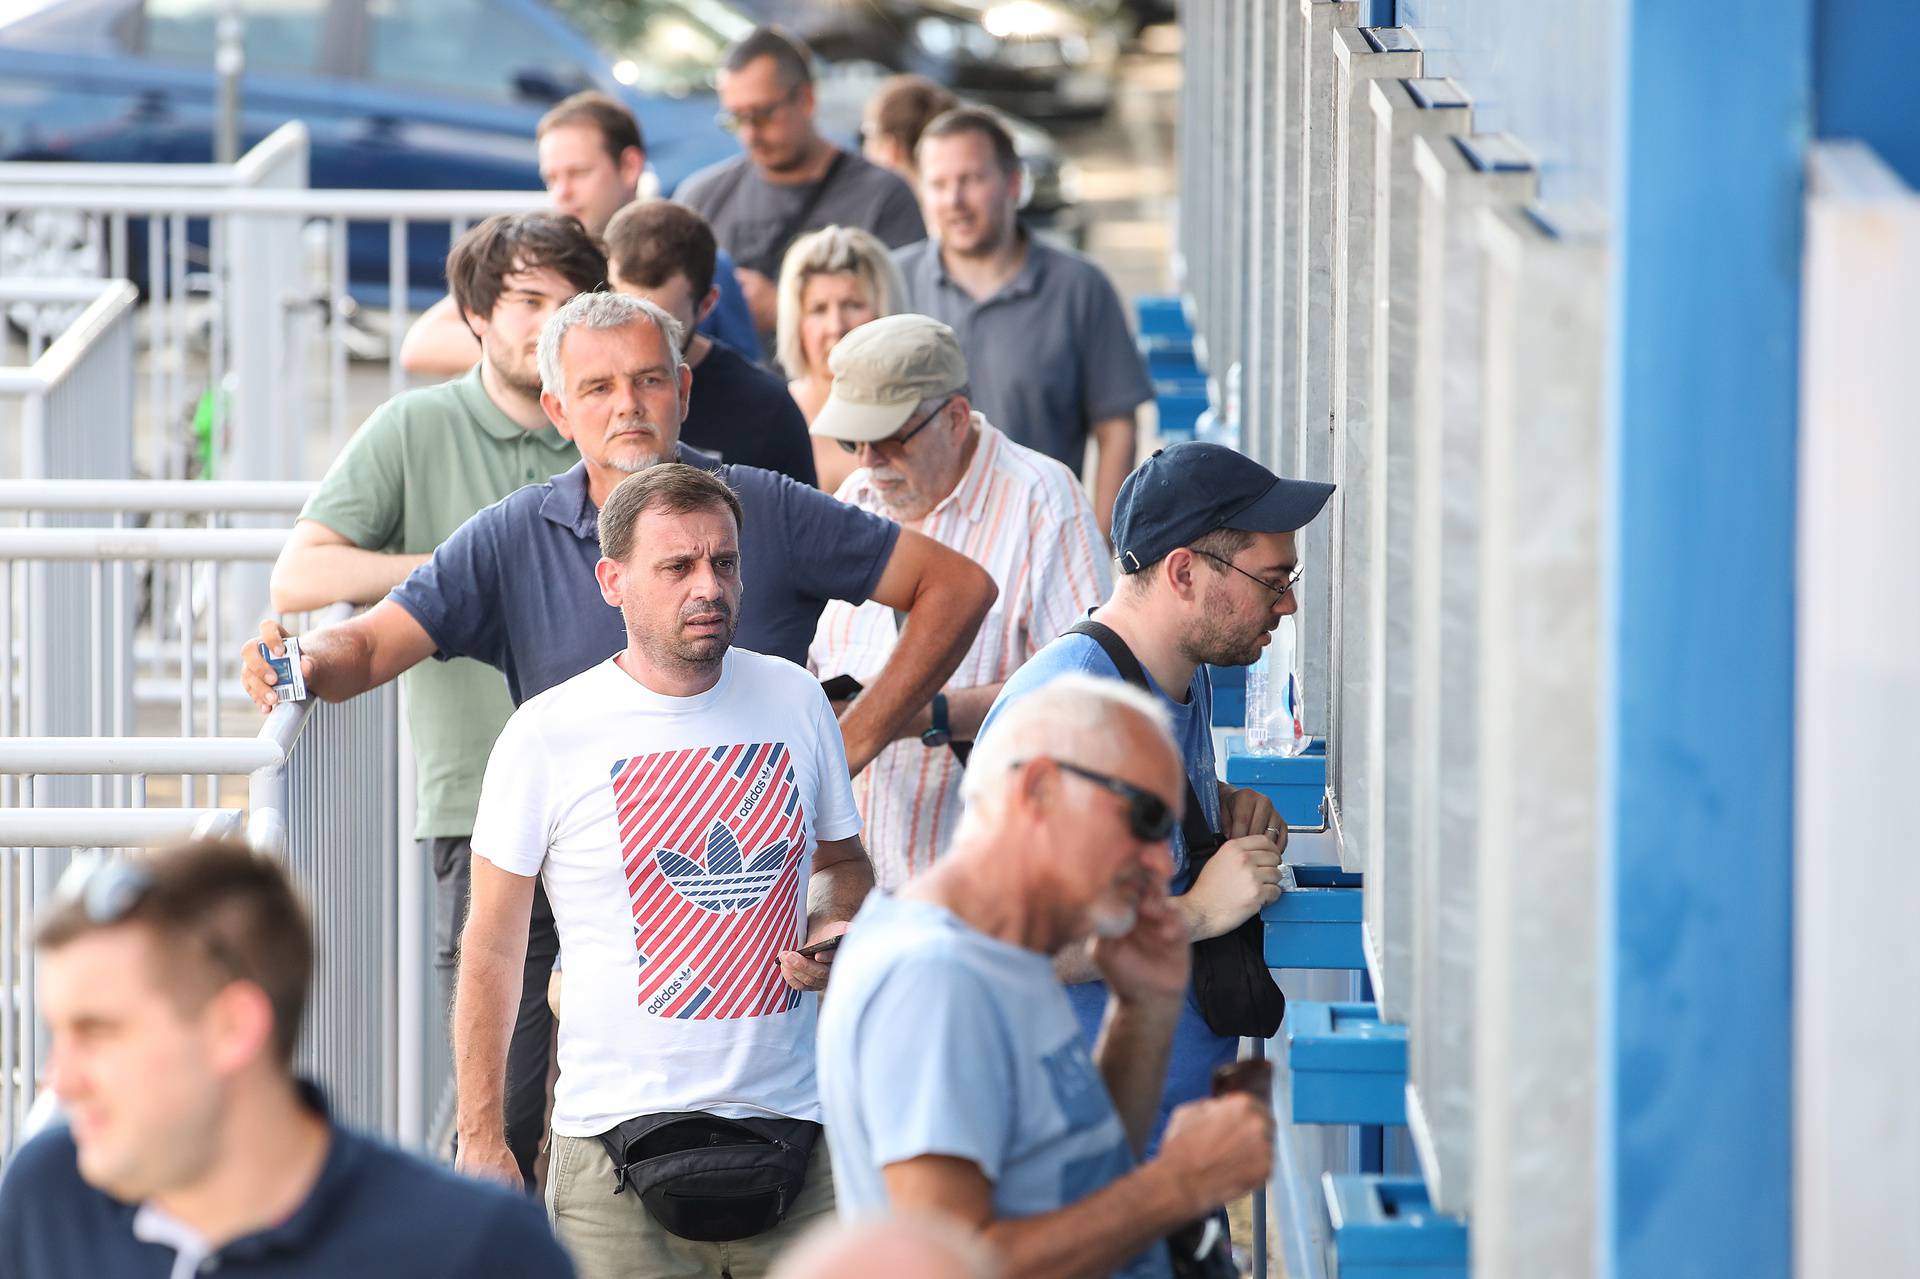 Počela prodaja godišnjih karata za Dinamo